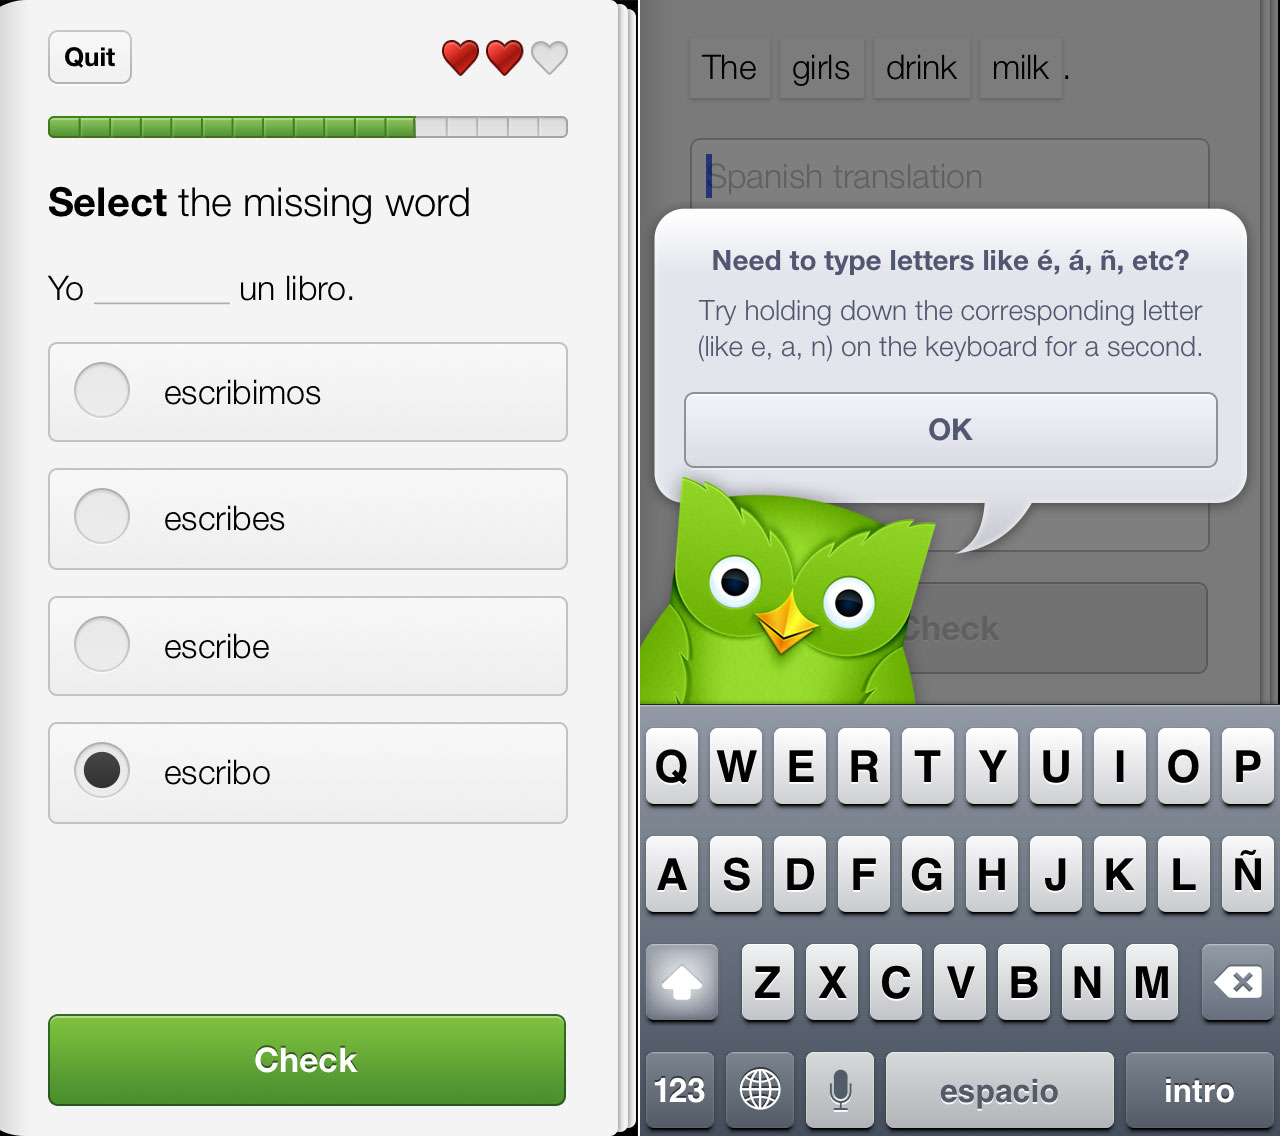 แนะนำแอพลิเคชั่น Duolingo: Learn Languages (เรียนภาษาอังกฤษ) ฟรี!